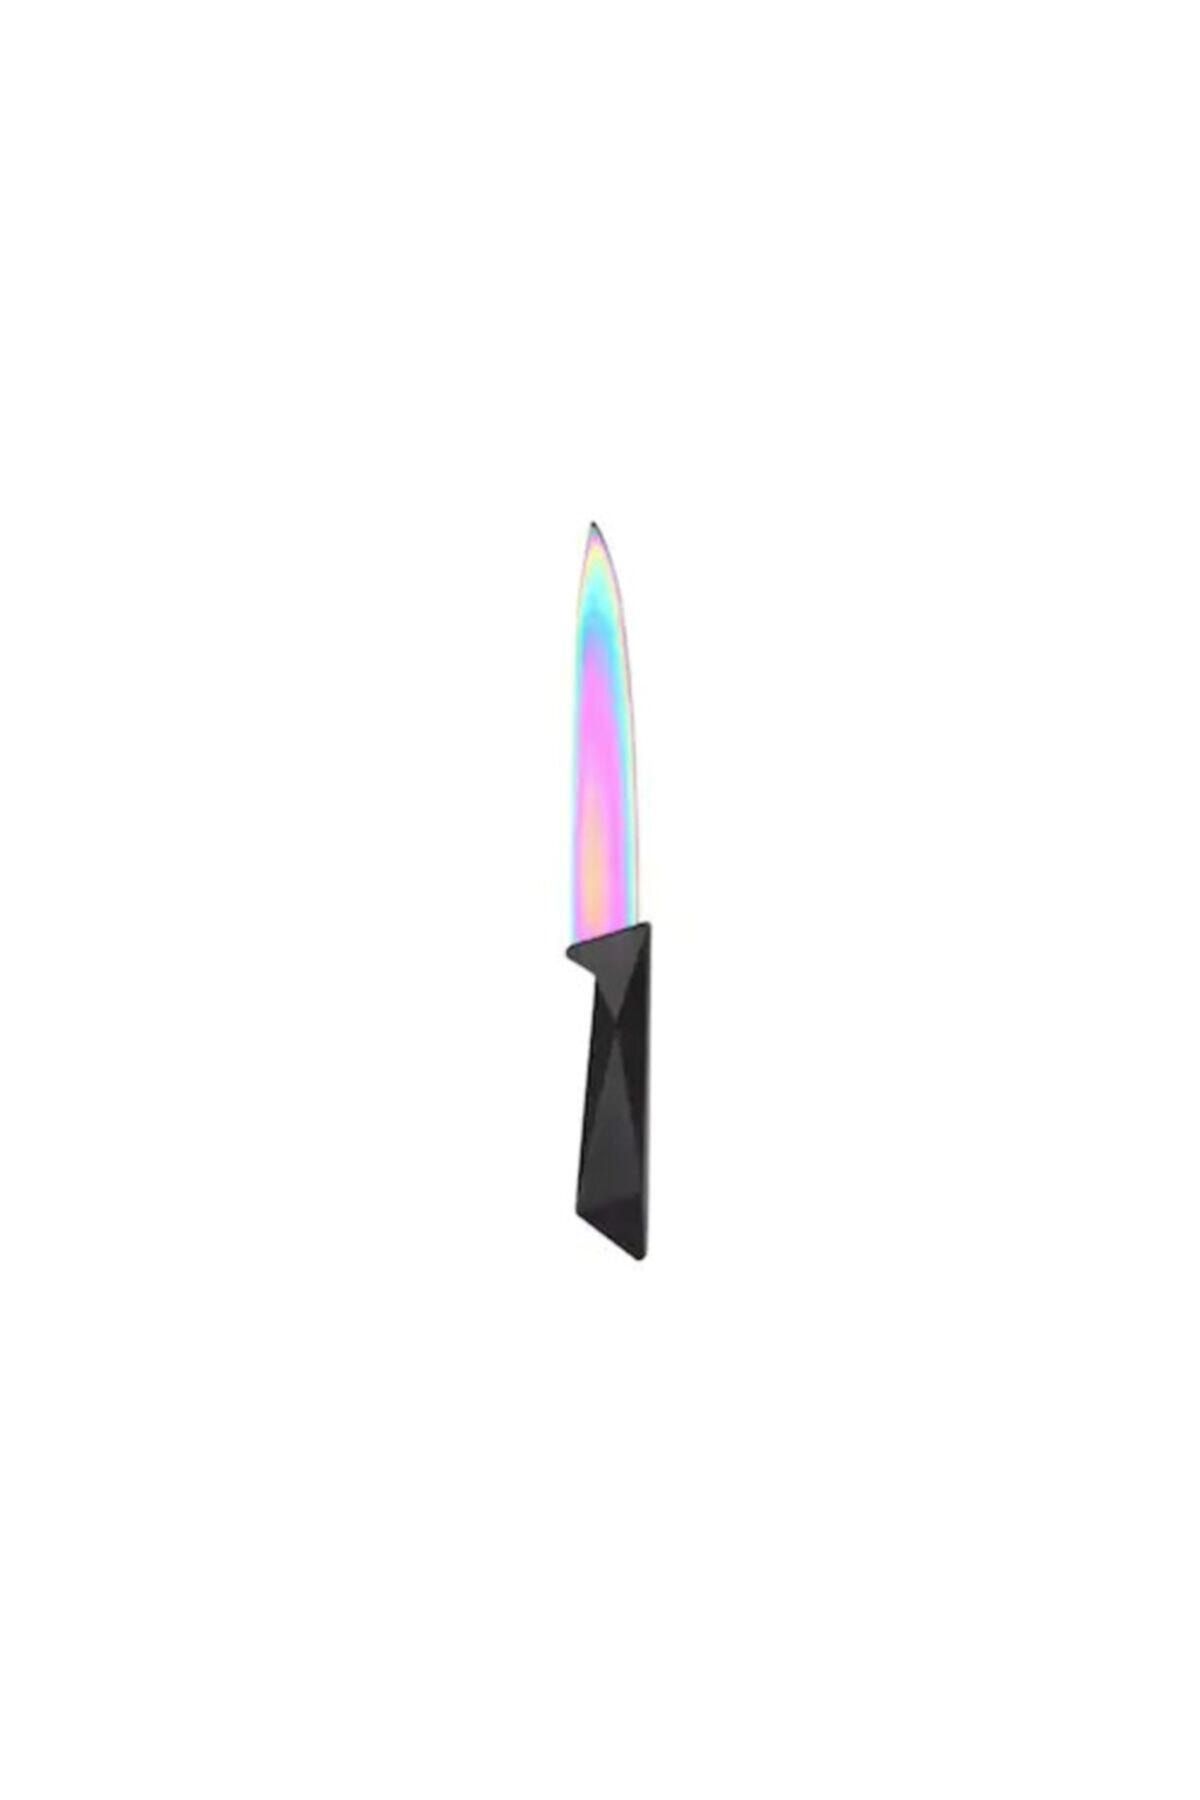 Rooc Roc T001s Tırtıklı Bıçak, Ekmek Bıçağı